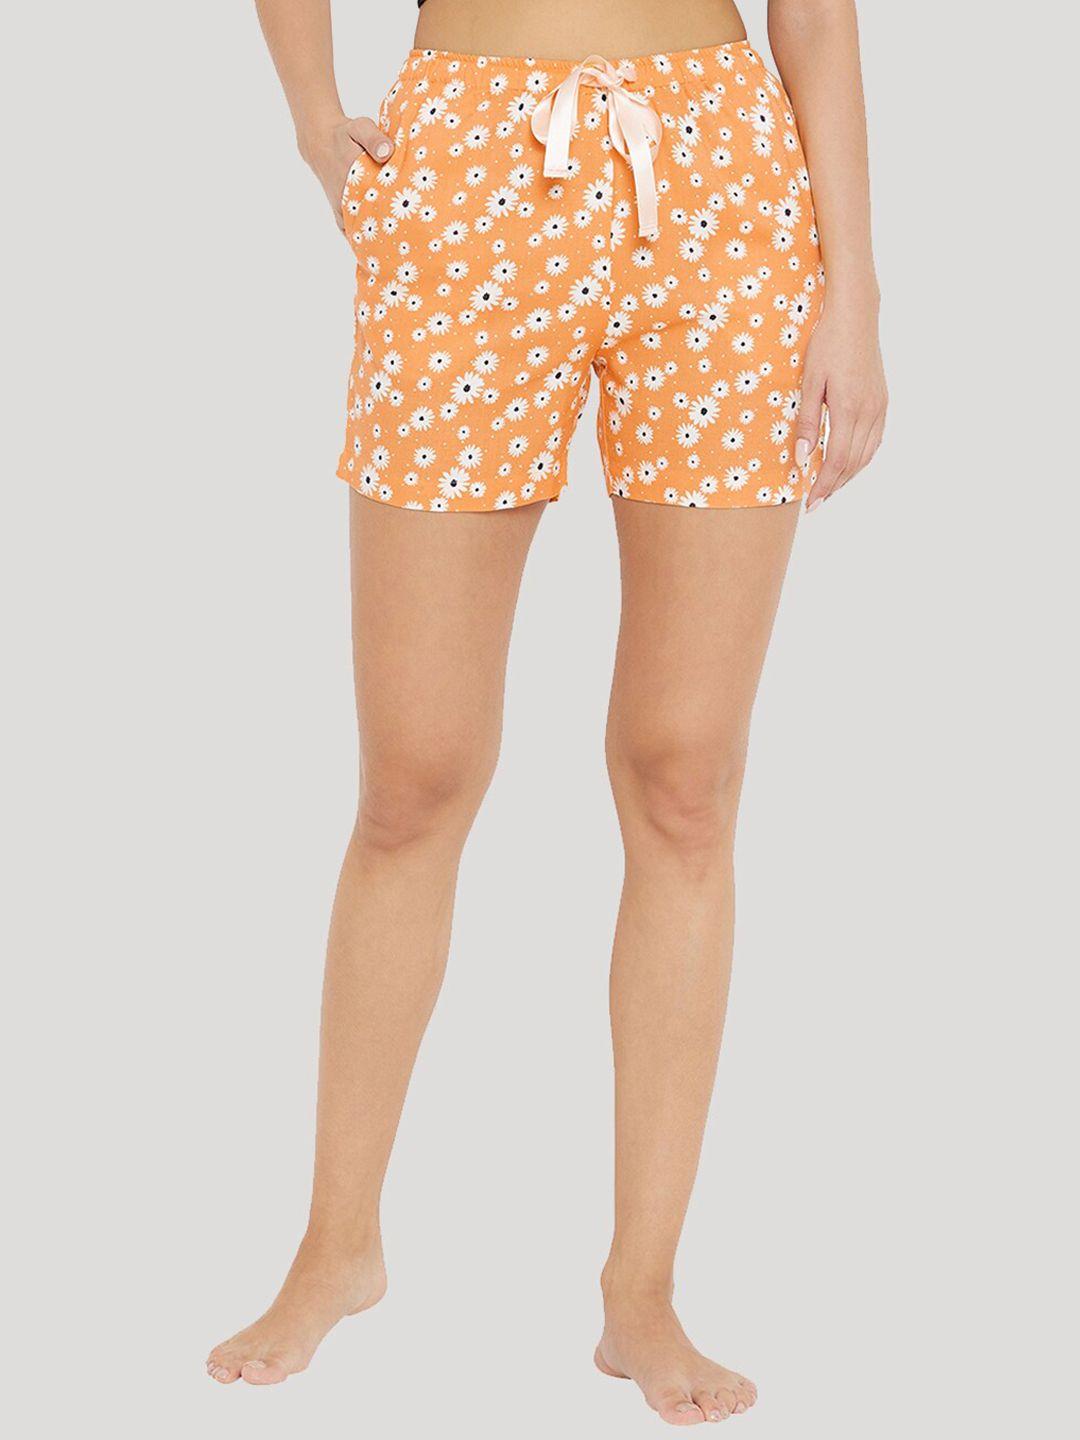 style-shoes-women-orange-&-white-printed-lounge-shorts